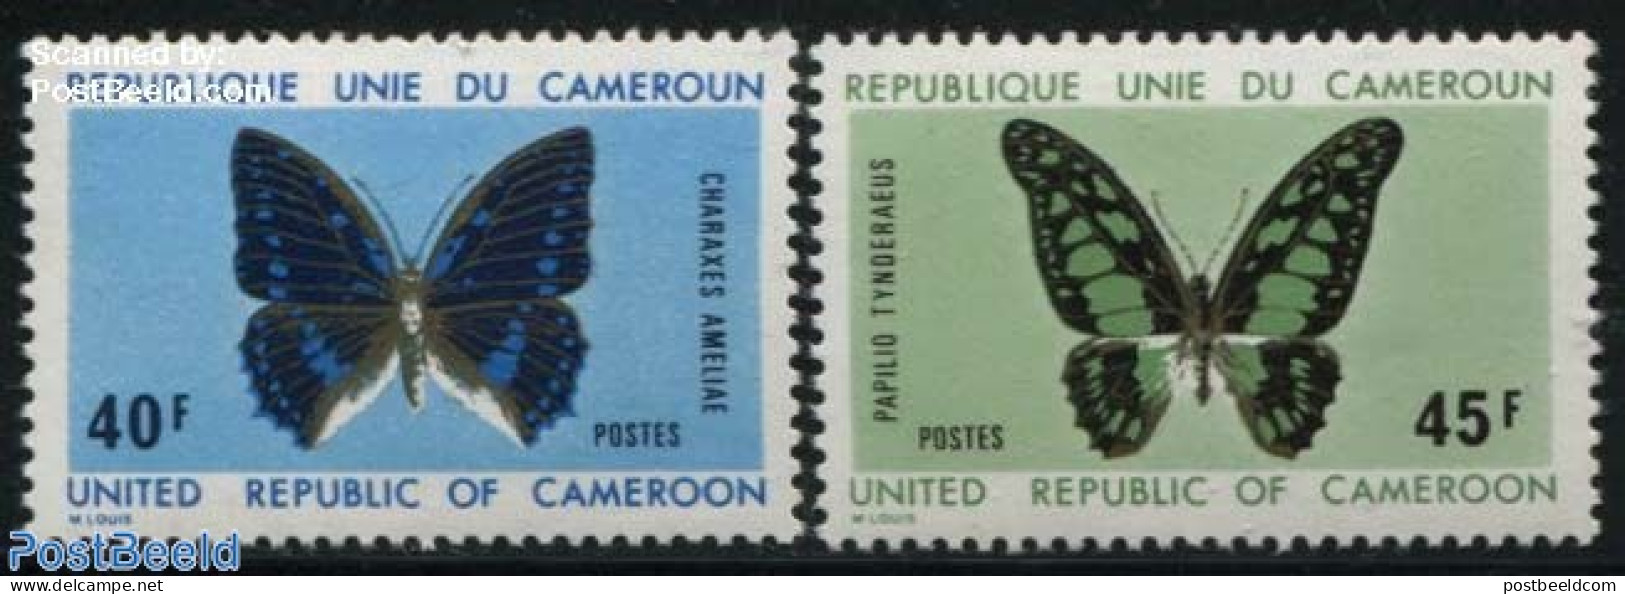 Cameroon 1972 Butterflies 2v, Mint NH, Nature - Butterflies - Camerun (1960-...)